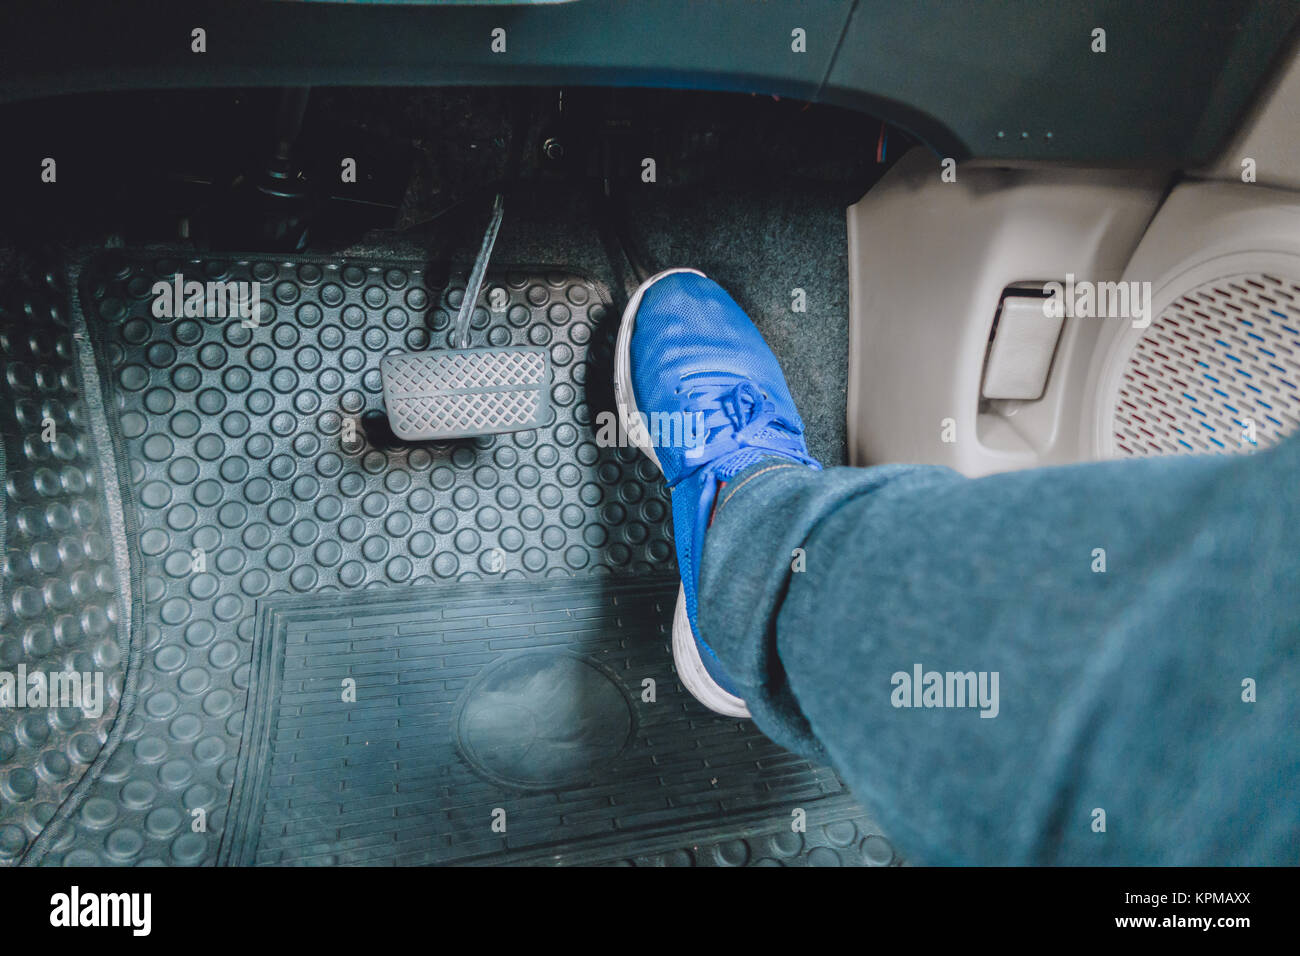 Gas pedal -Fotos und -Bildmaterial in hoher Auflösung – Alamy